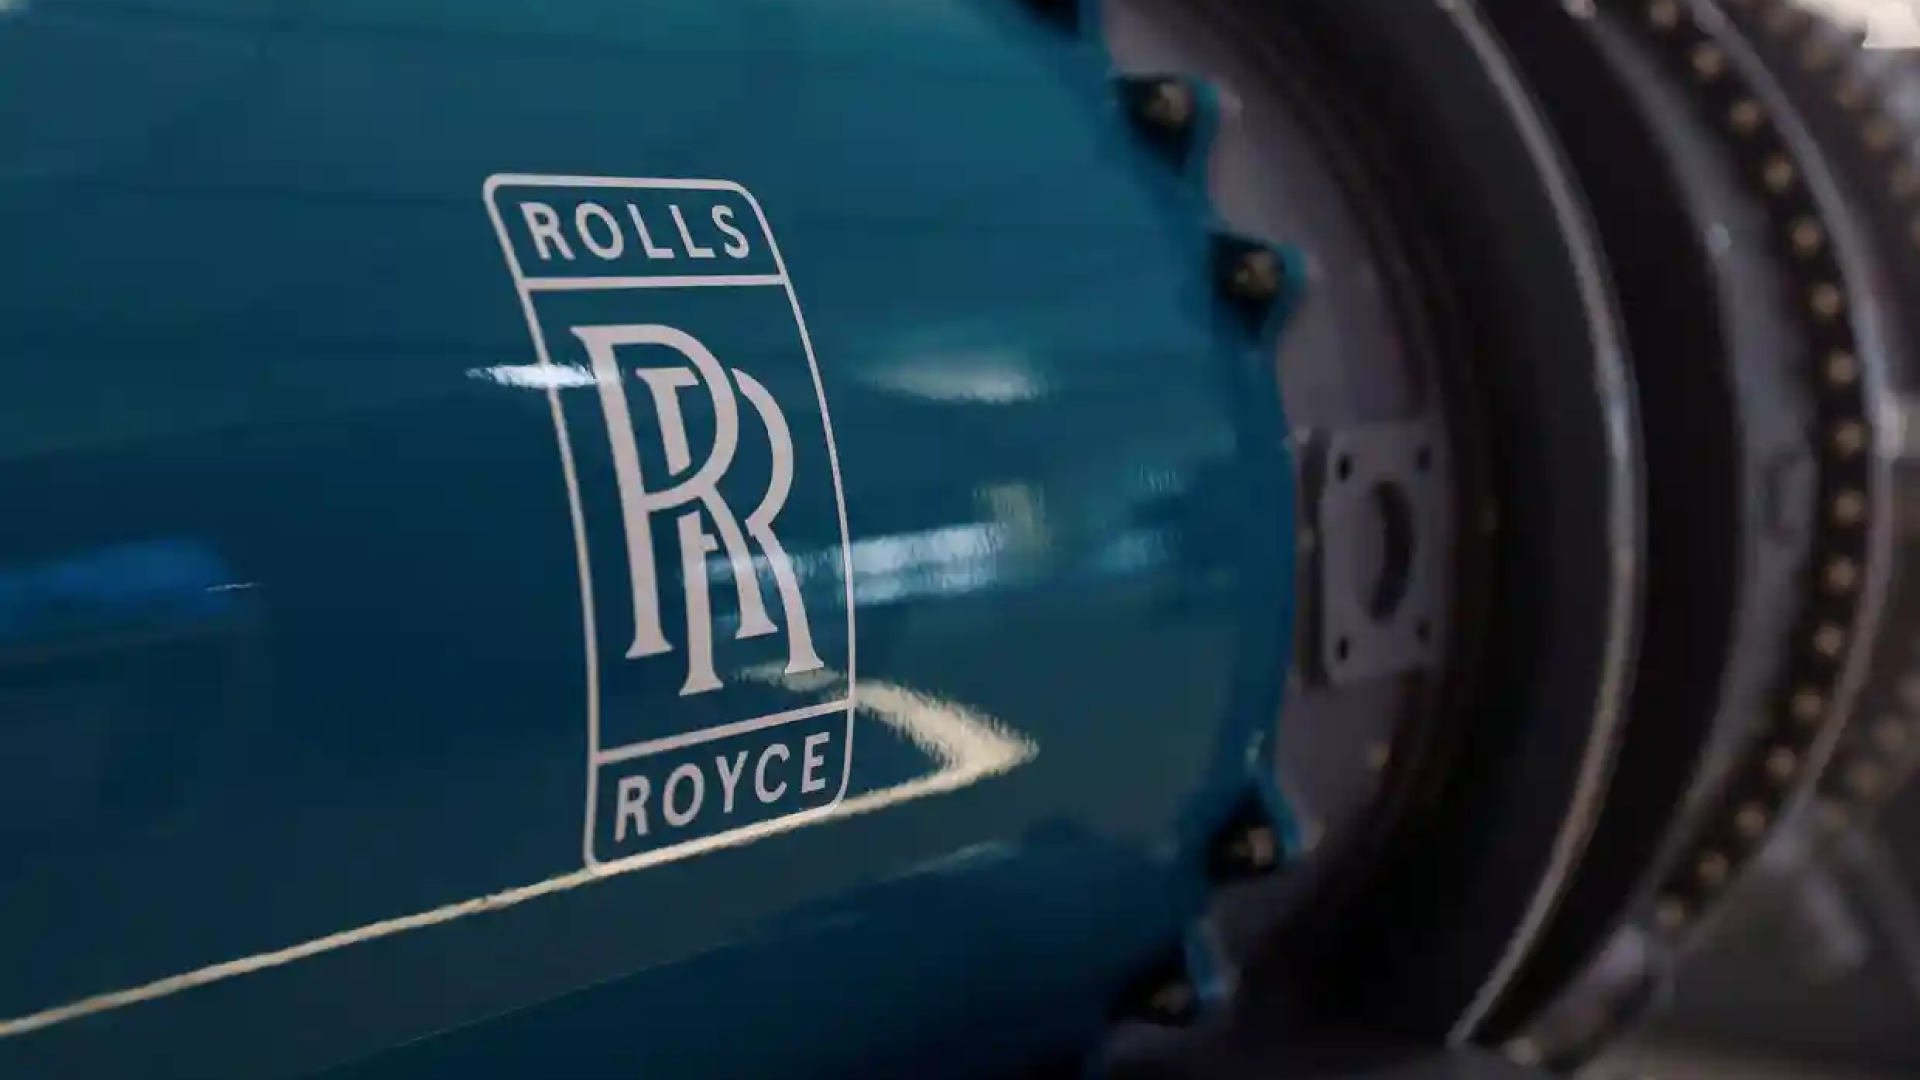 rolls royce hydrogen